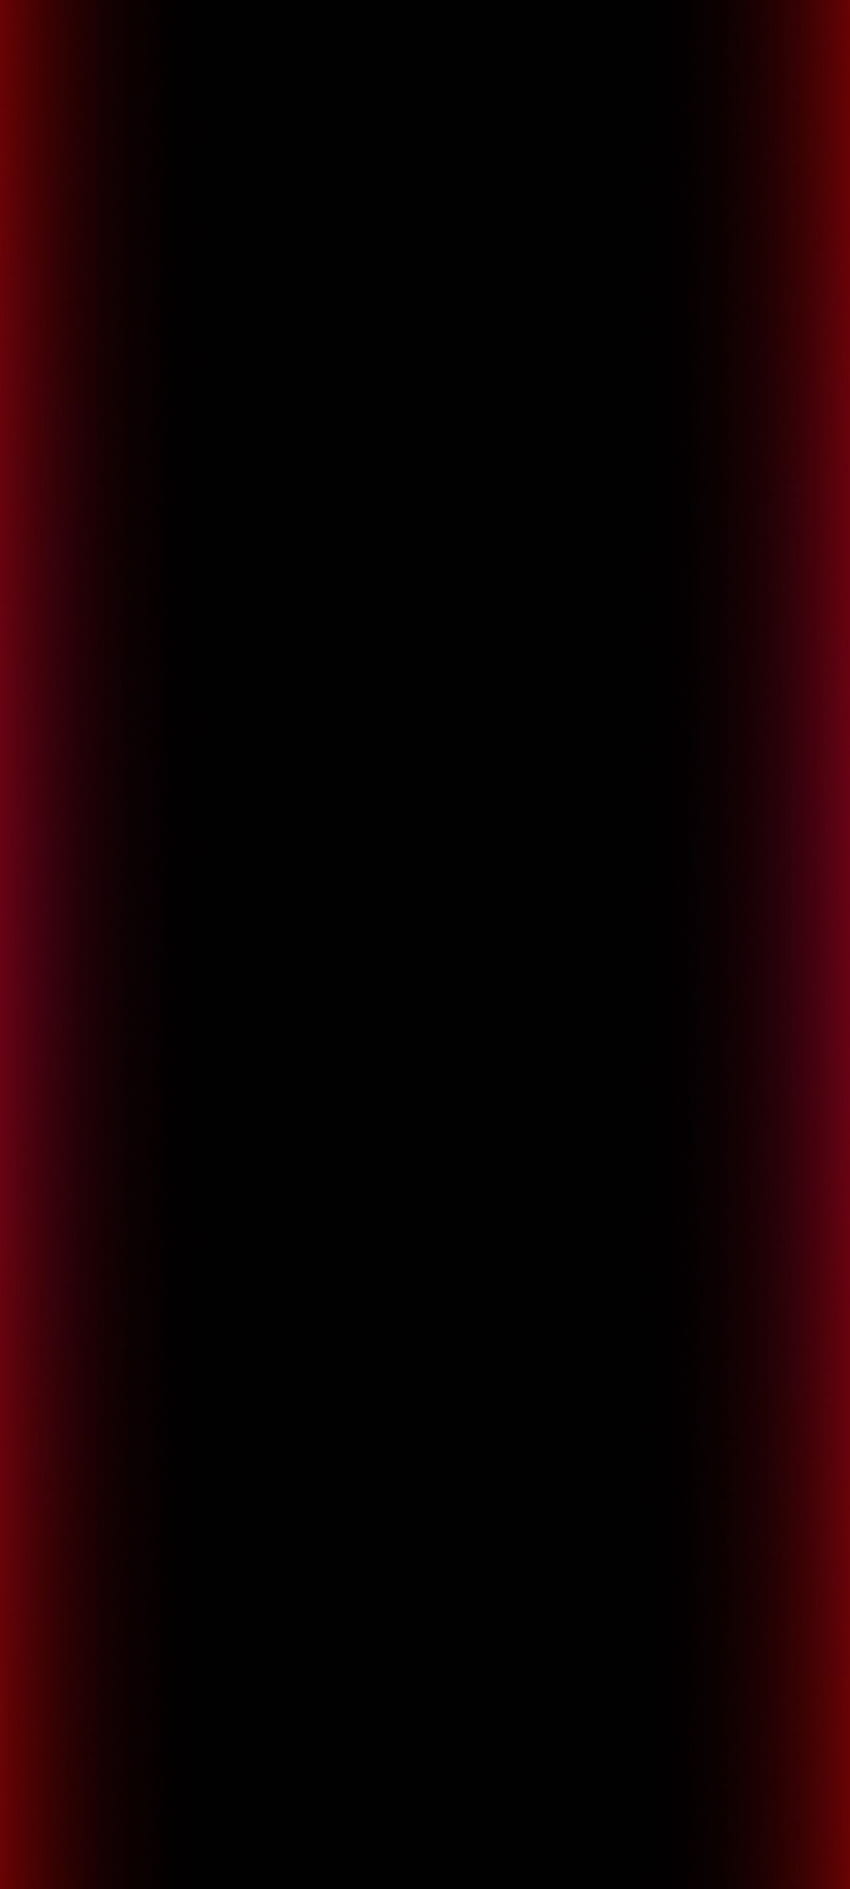 Borde rojo AMOLED Negro fondo de pantalla del teléfono